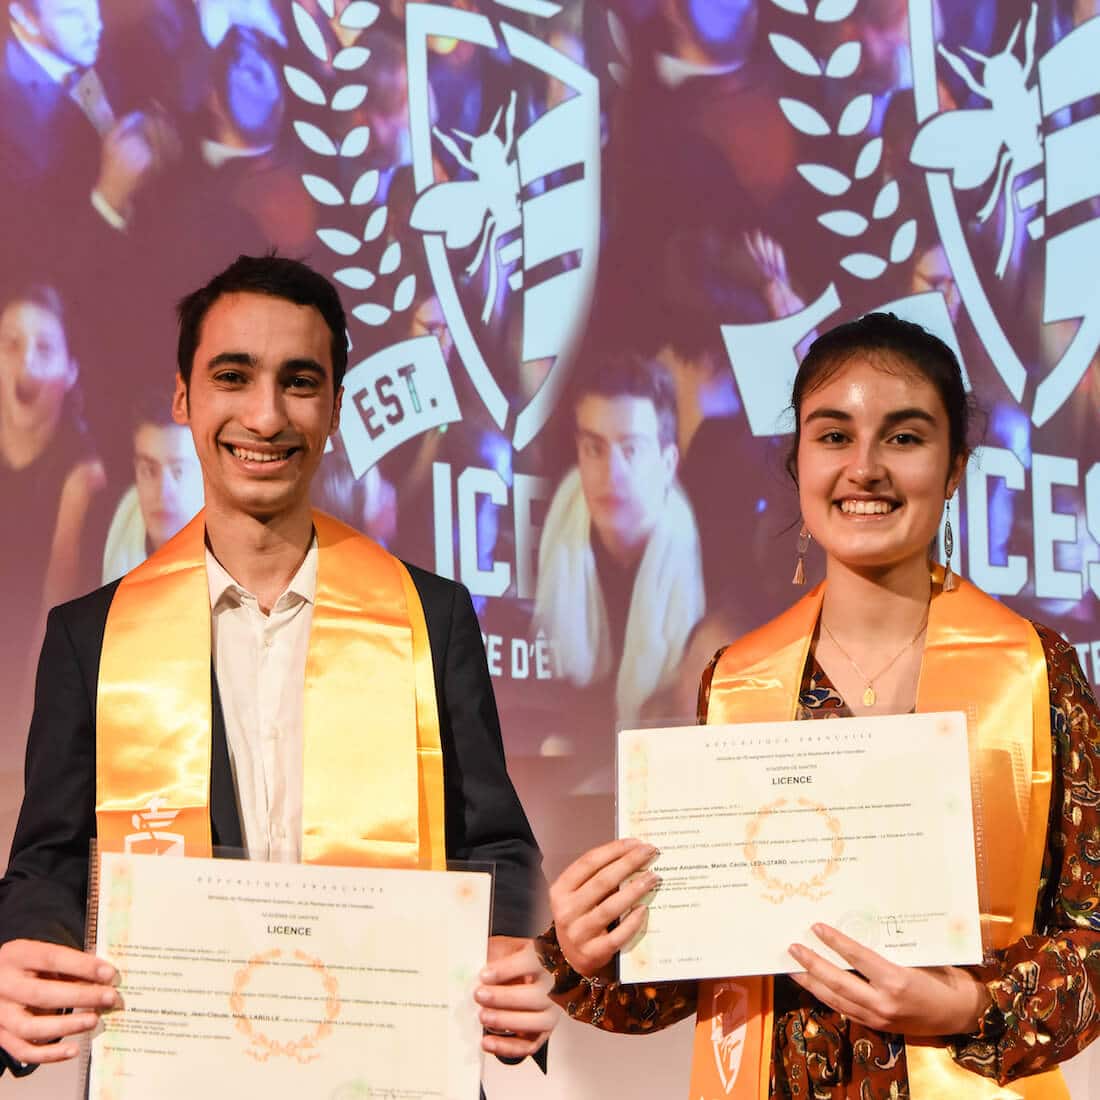 Amaury Labulle et Amandine Lesbastard lors de leur remise de diplôme de Licence en 2021